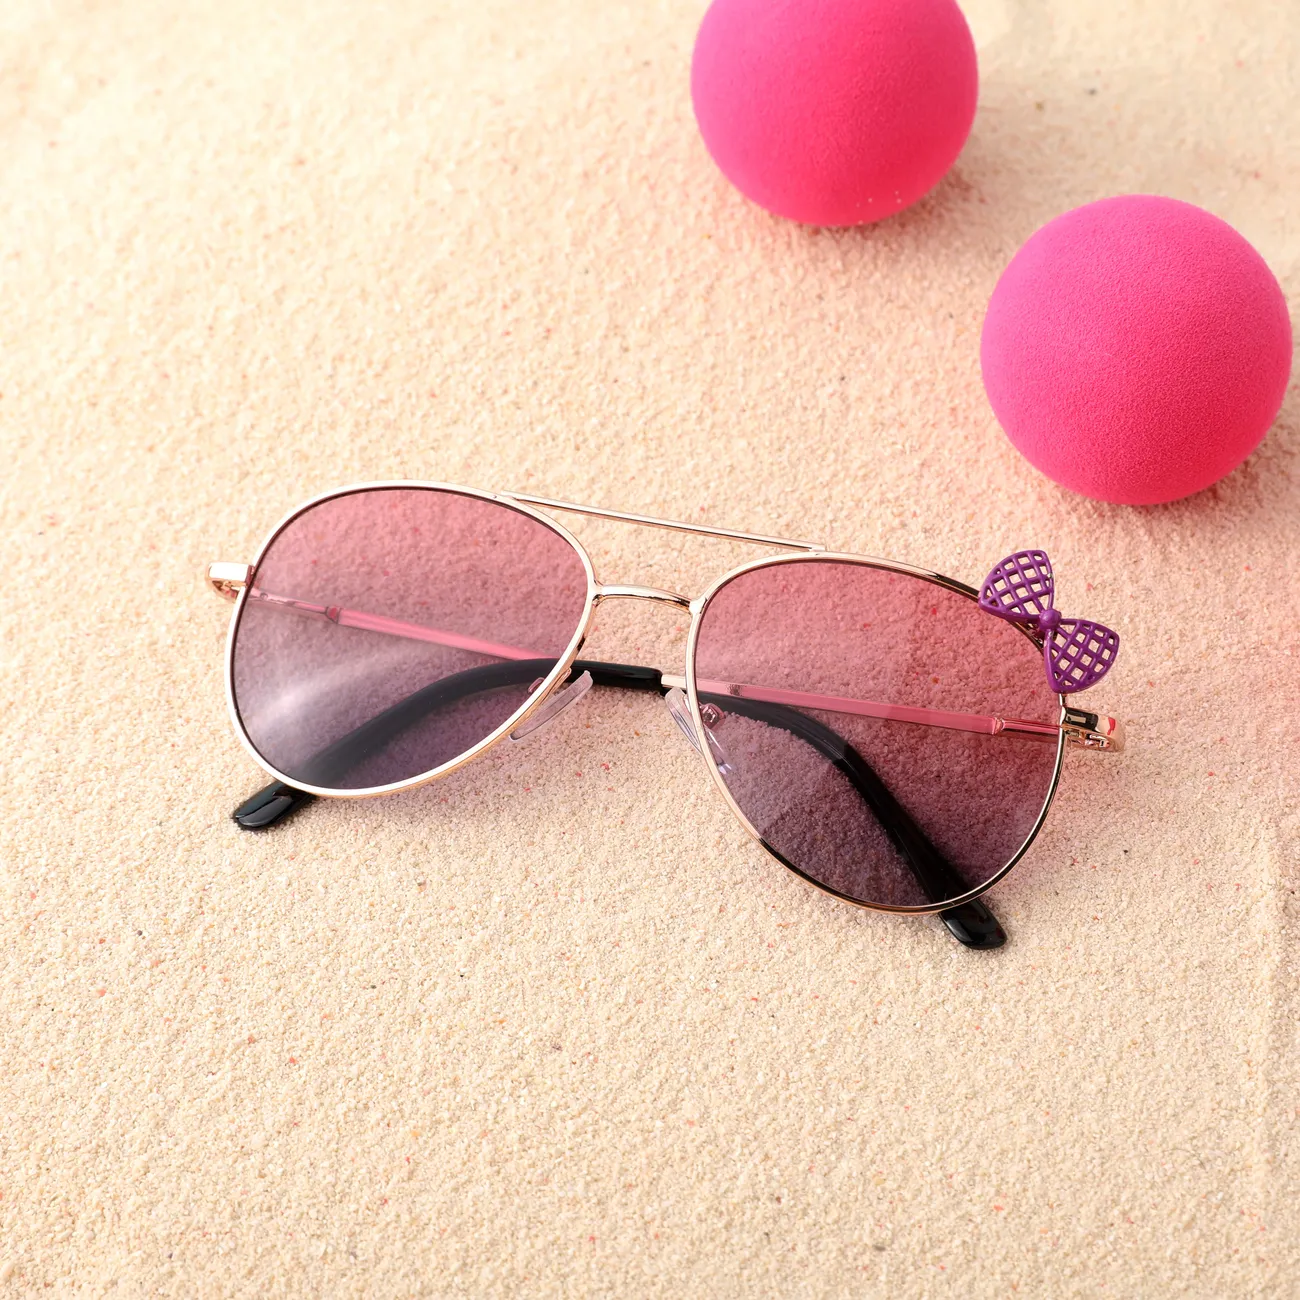 Gafas de sol dulces para niños pequeños / niños con marco de metal y lentes decorativas de ojo de gato de pajarita negro/rosa big image 1